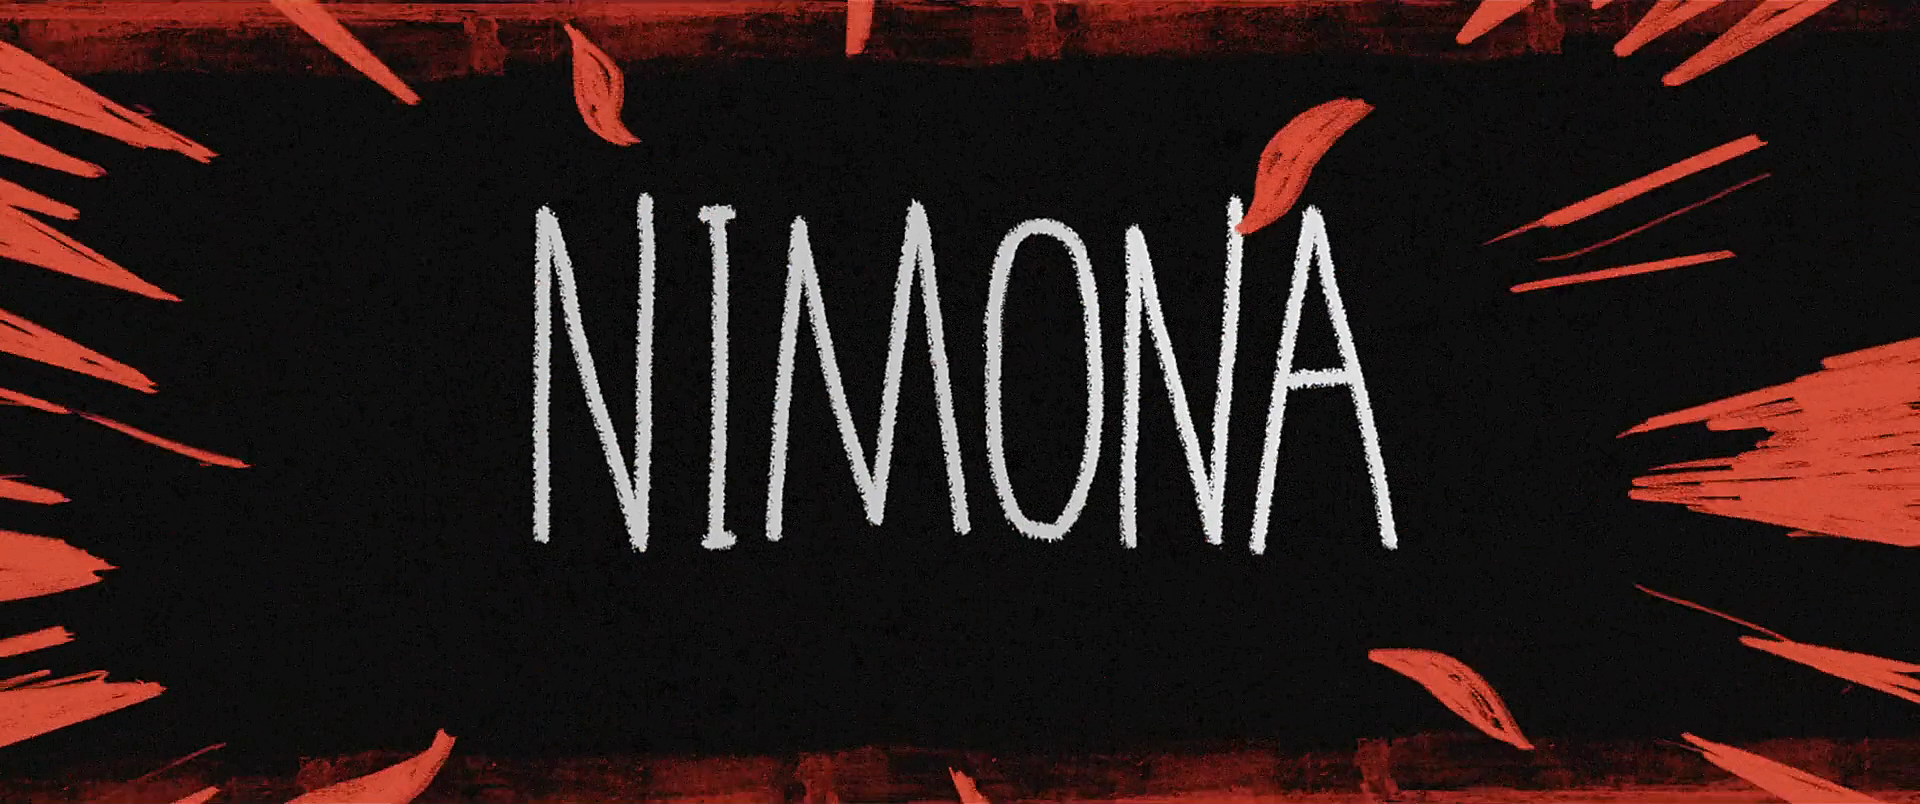 Nimona Movies Animated Movie Cartoon CGi Film Stills 1920x804